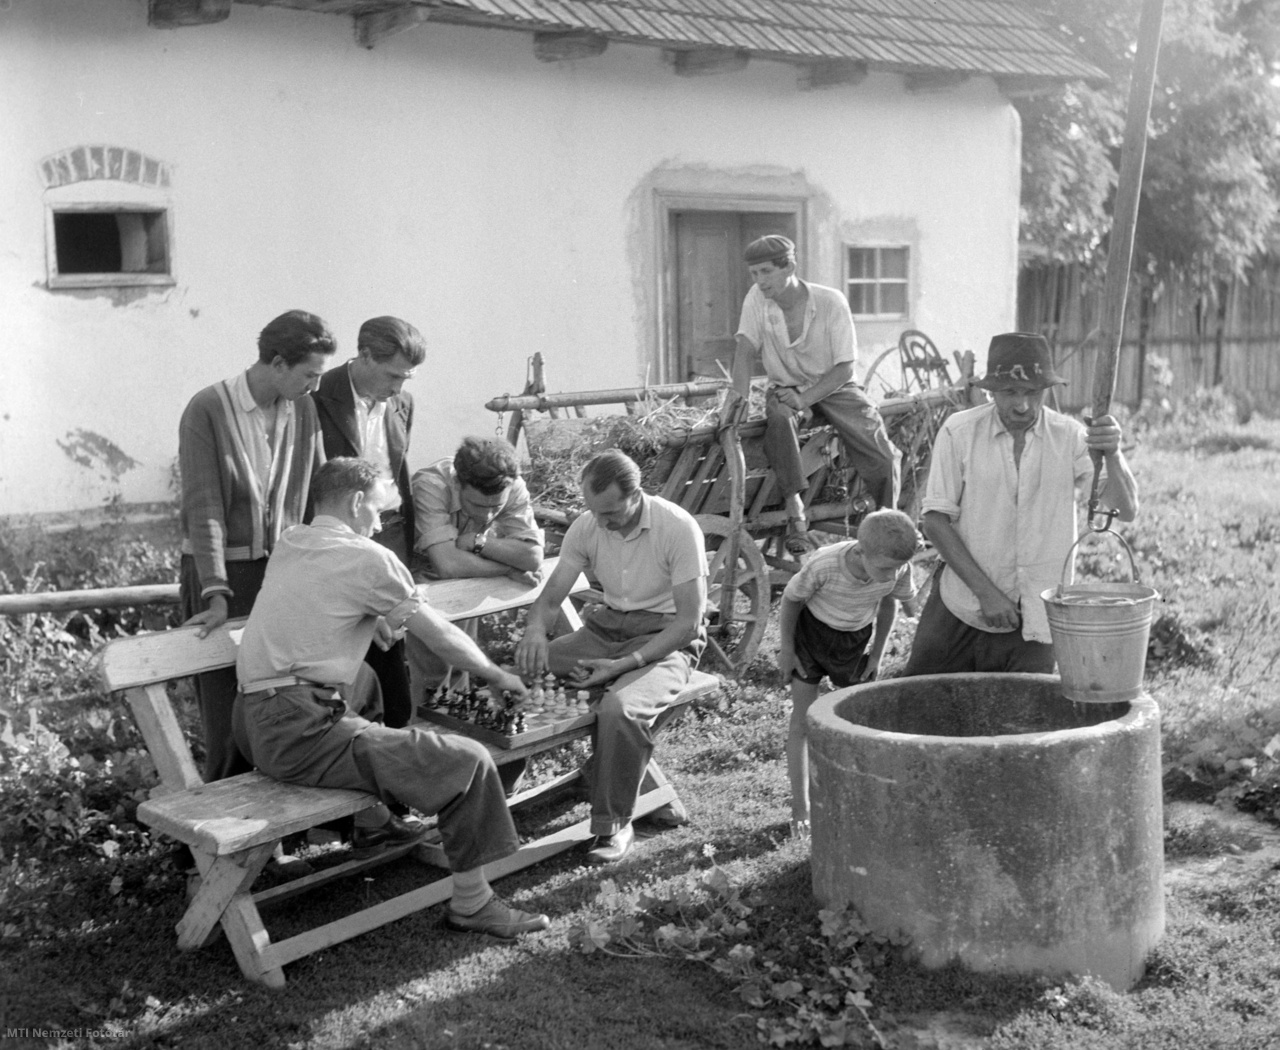 Rozsály, 1958. július 13. A rozsályi falusi sportkör tagjai figyelik két sakkozó társukat munka után egy ház udvarán, mellettük egy férfi vizet húz a gémeskútból